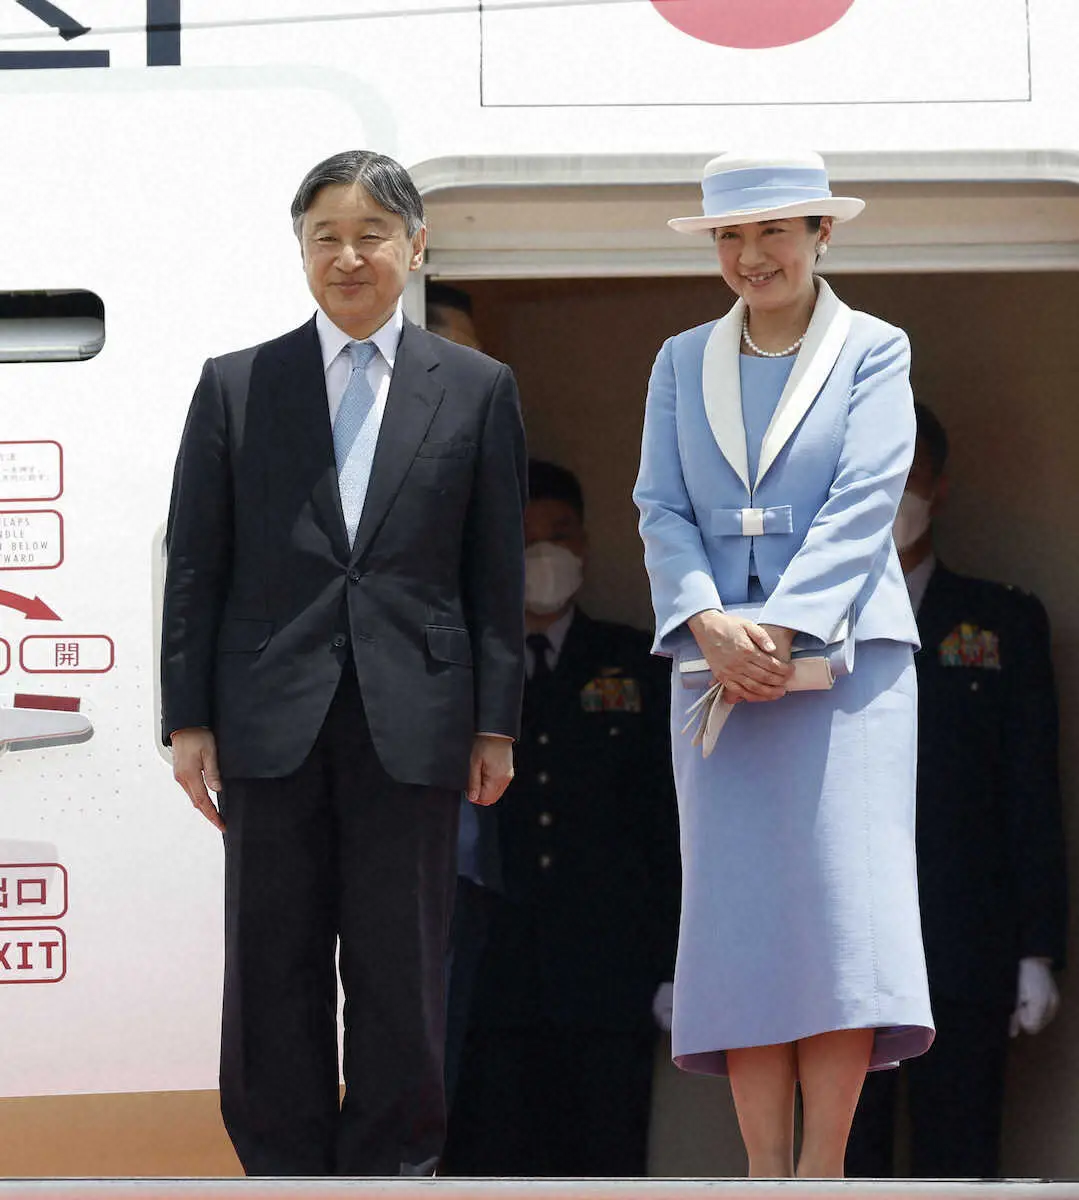 羽田空港から英国へ出発される天皇、皇后両陛下